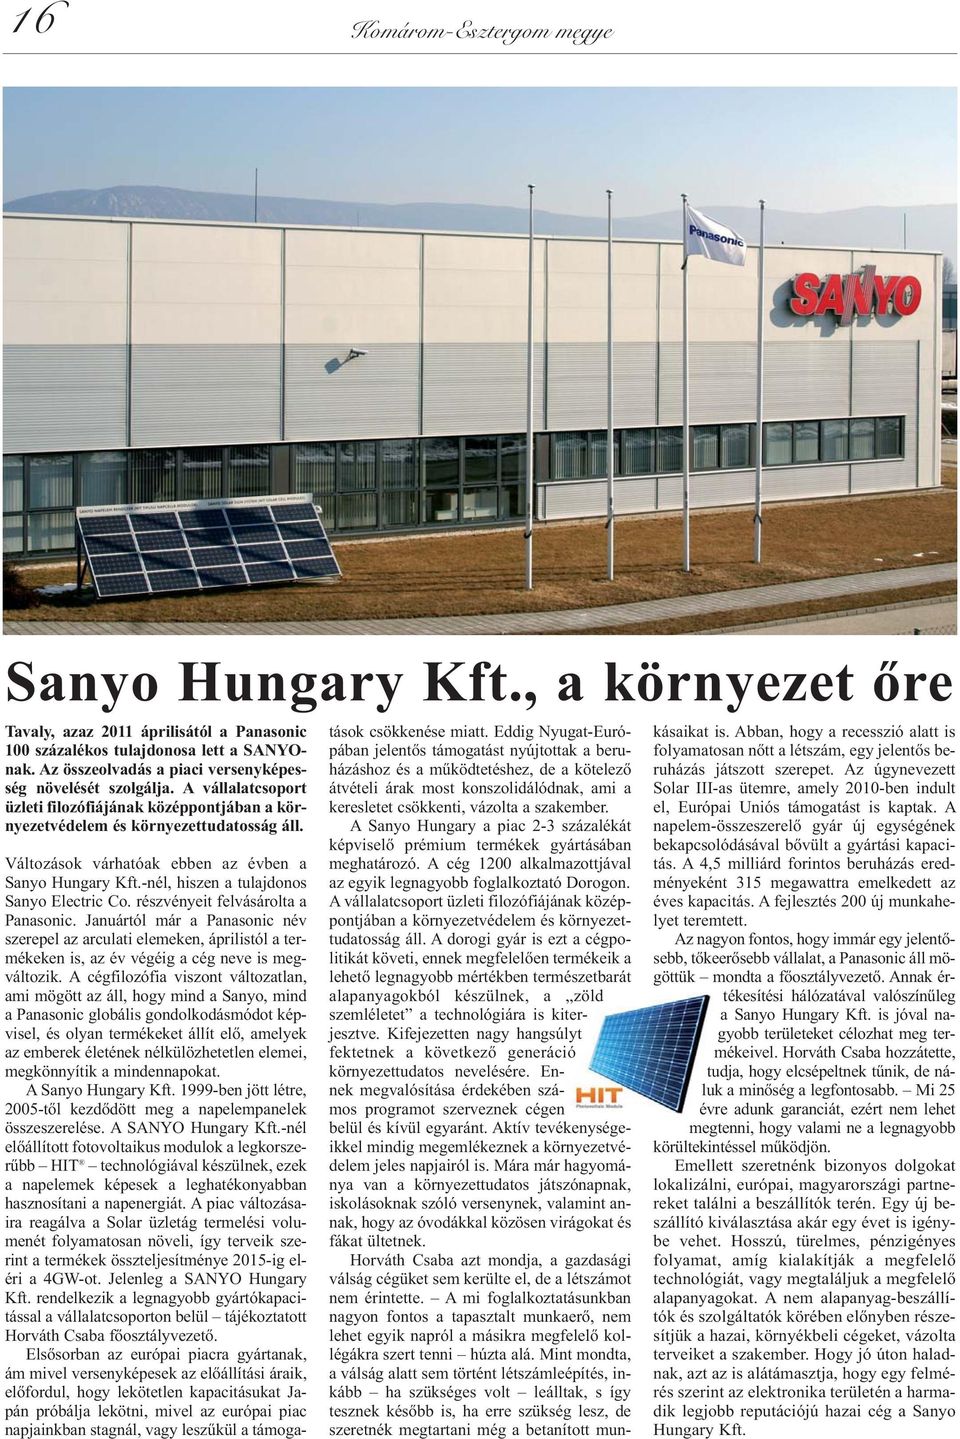 Vál to zá sok vár ha tó ak eb ben az év ben a Sanyo Hungary Kft.-nél, hiszen a tulajdonos Sanyo Electric Co. részvényeit felvásárolta a Panasonic.